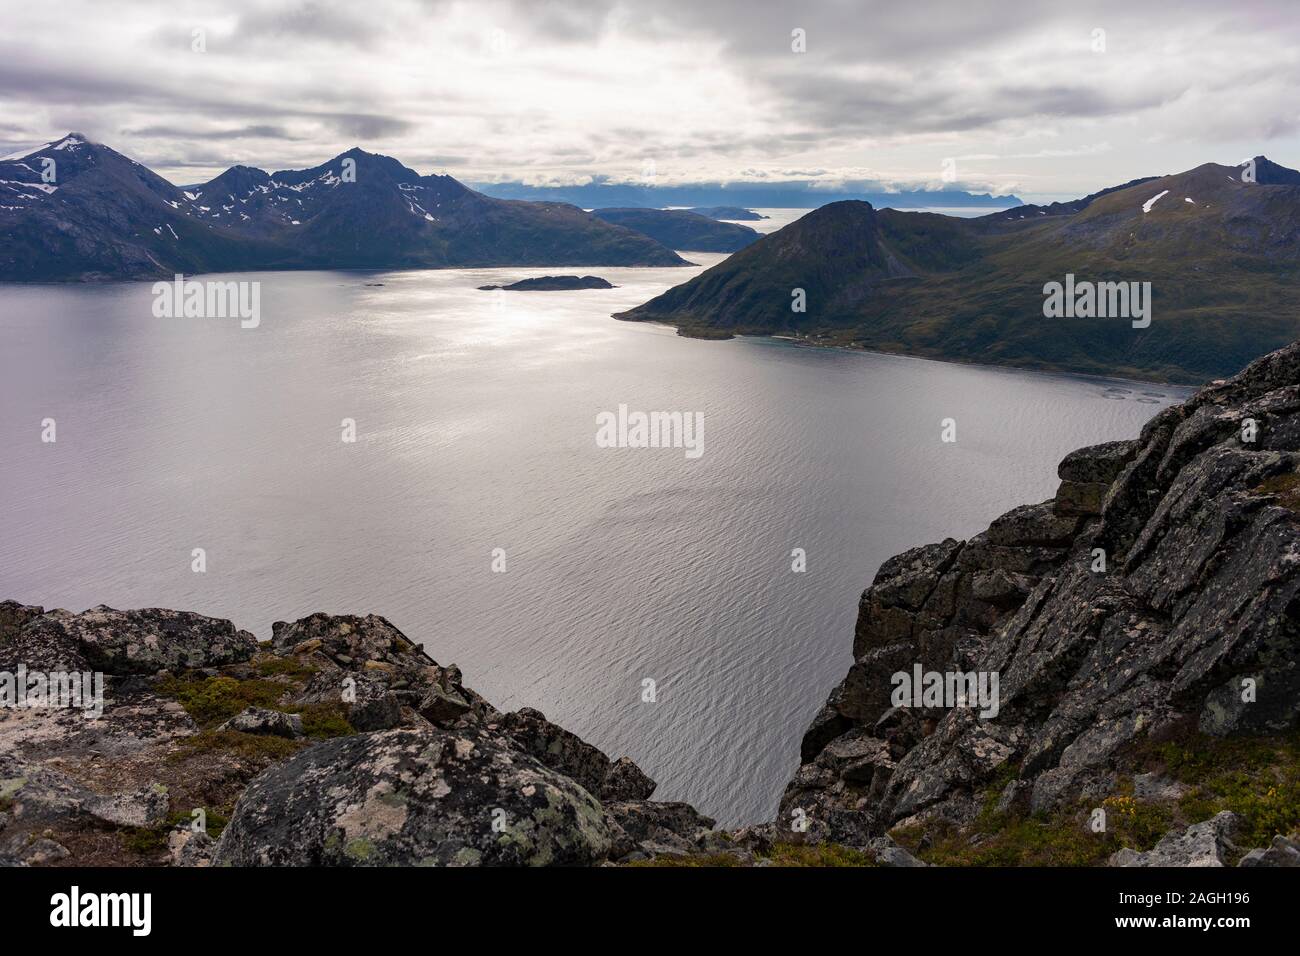 L'ÎLE DE KVALØYA, REKVIK, comté de Troms, NORVÈGE - Vue sur mer à partir de Brosmetinden mountain. Banque D'Images